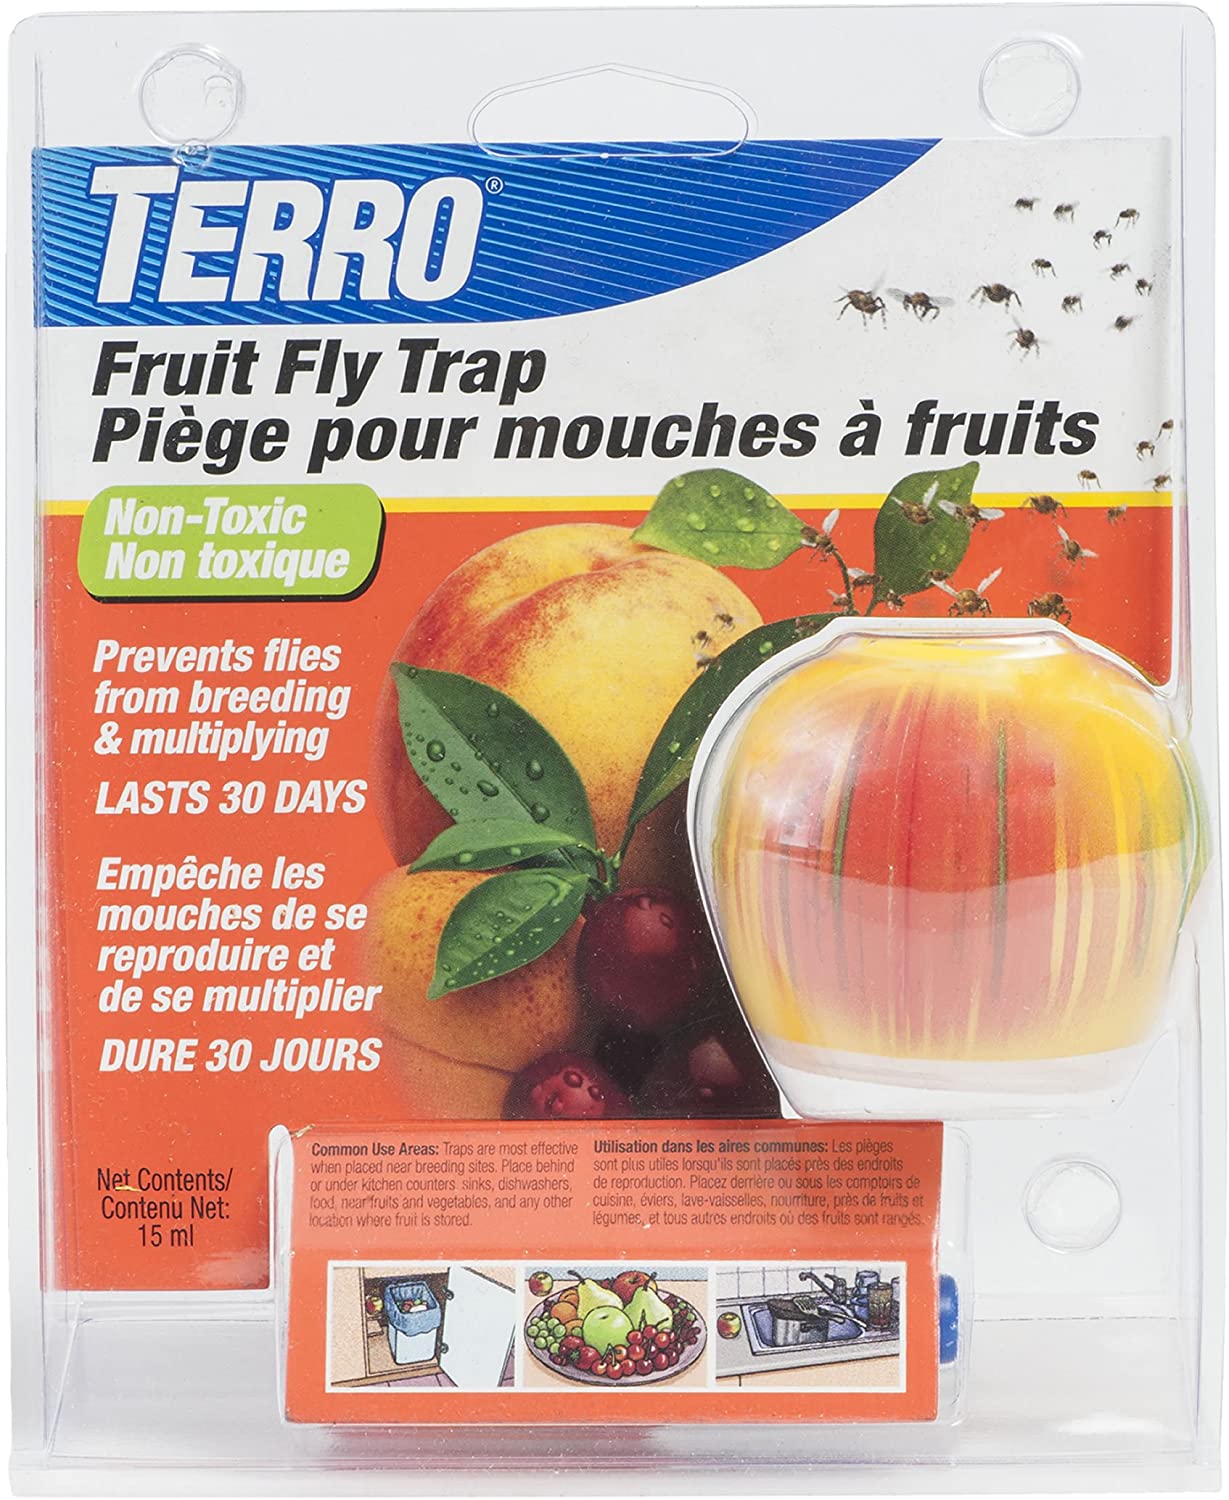 Piège à mouches des fruits, moucherons, mouches de vinaigre à 9,50 € - KPRO